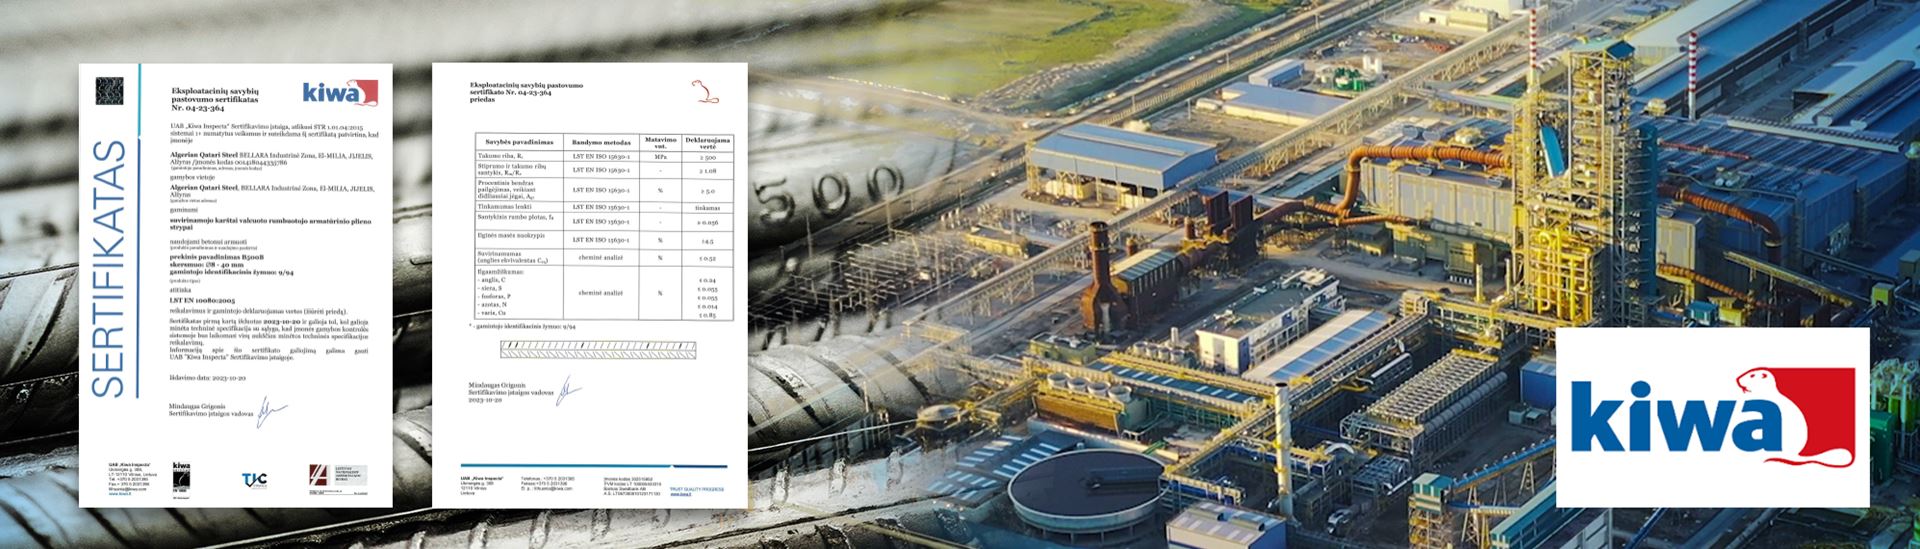 Algerian Qatari Steel KIWA sertifikasını kazanarak pazar hedeflerini genişletiyor